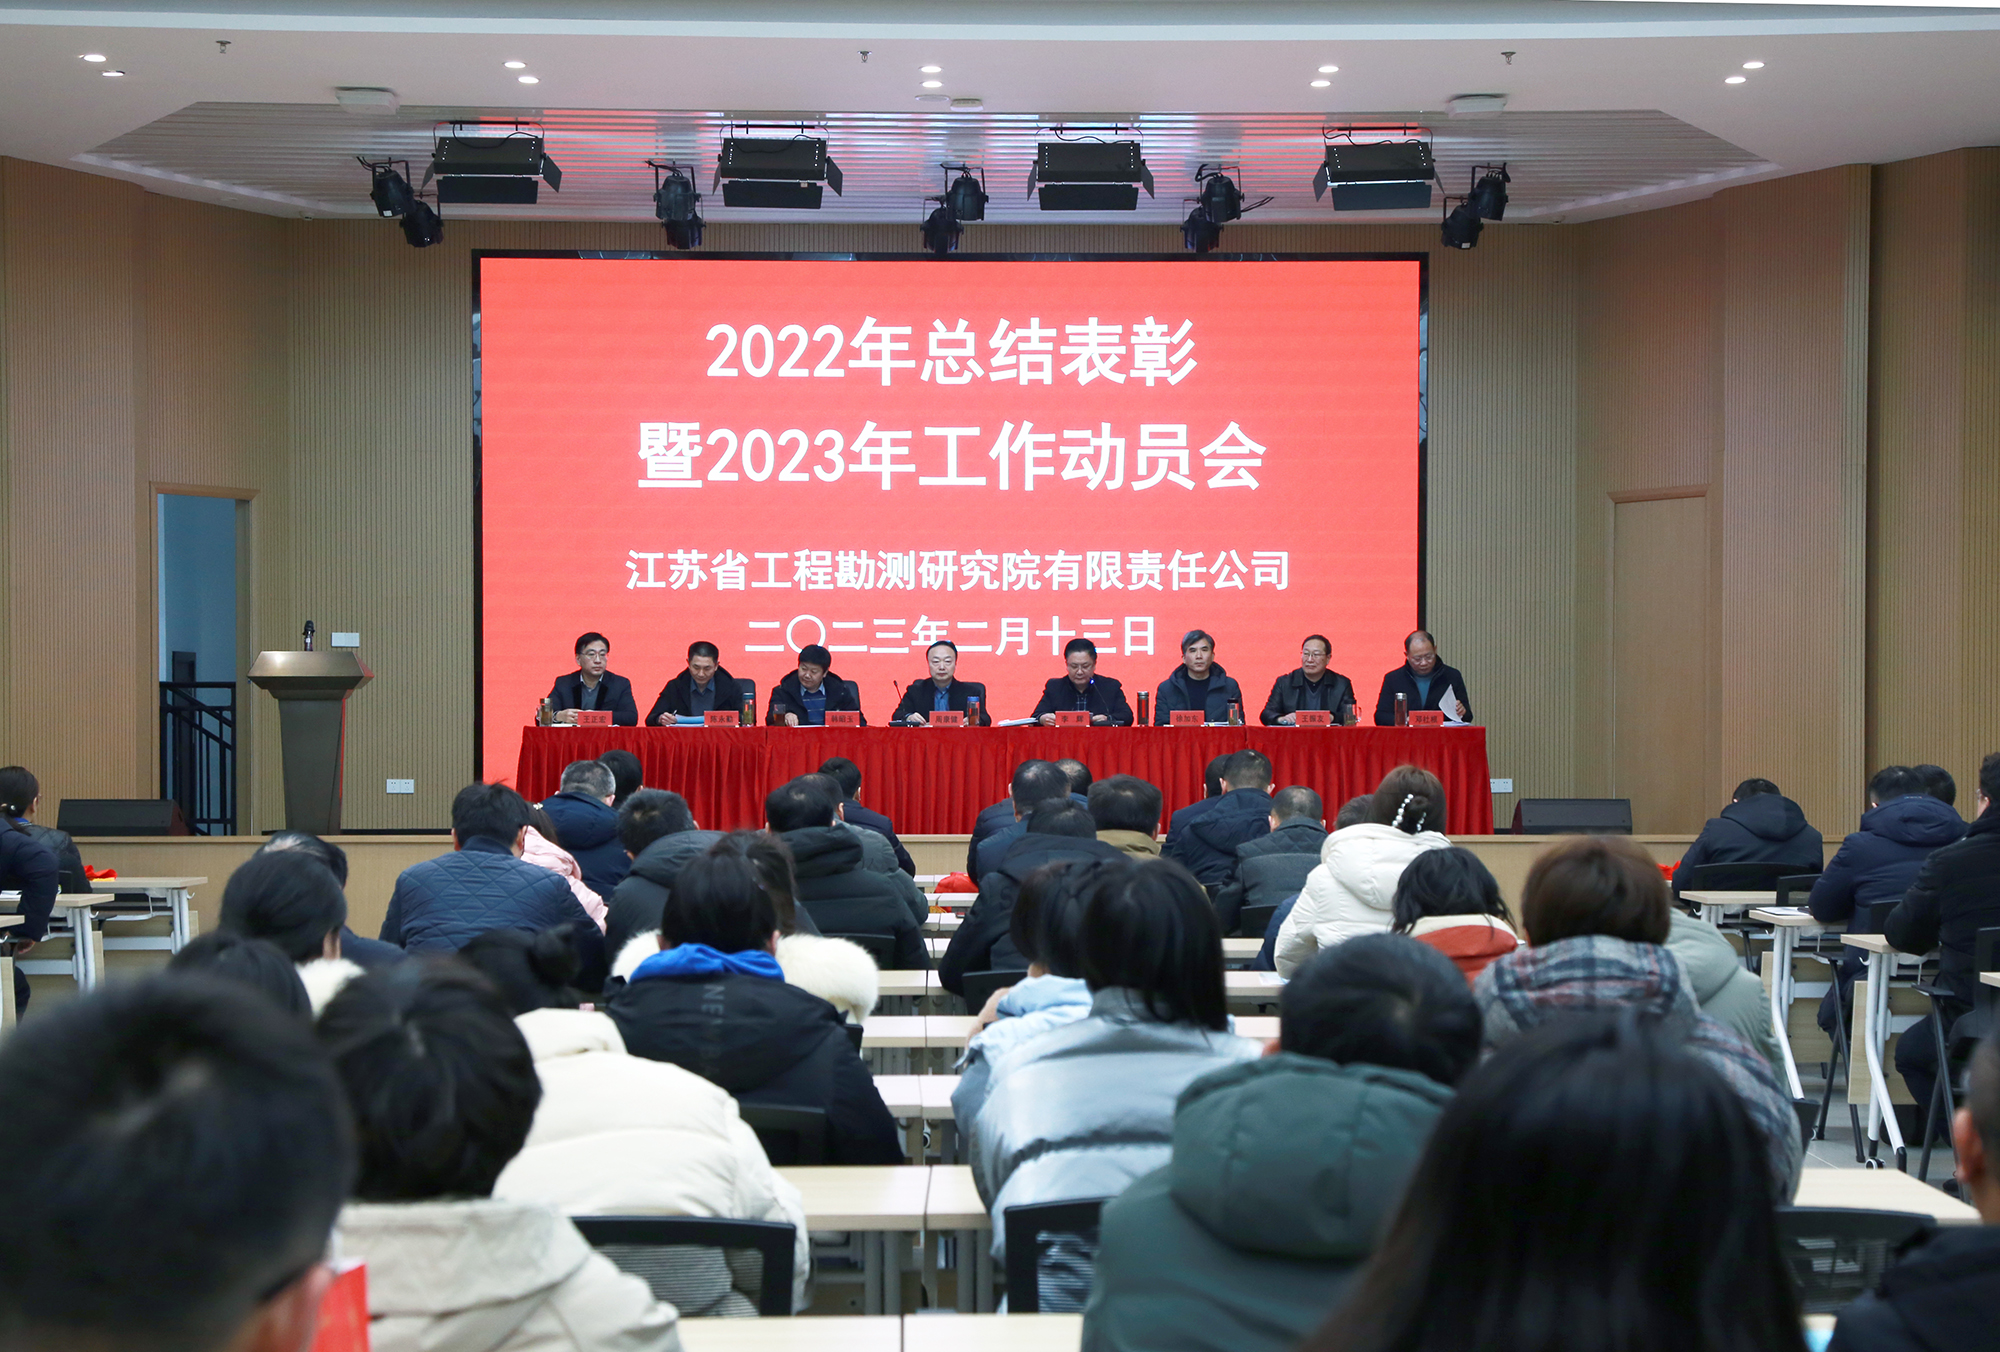 公司召开2022年总结表彰暨2023年工作动员会